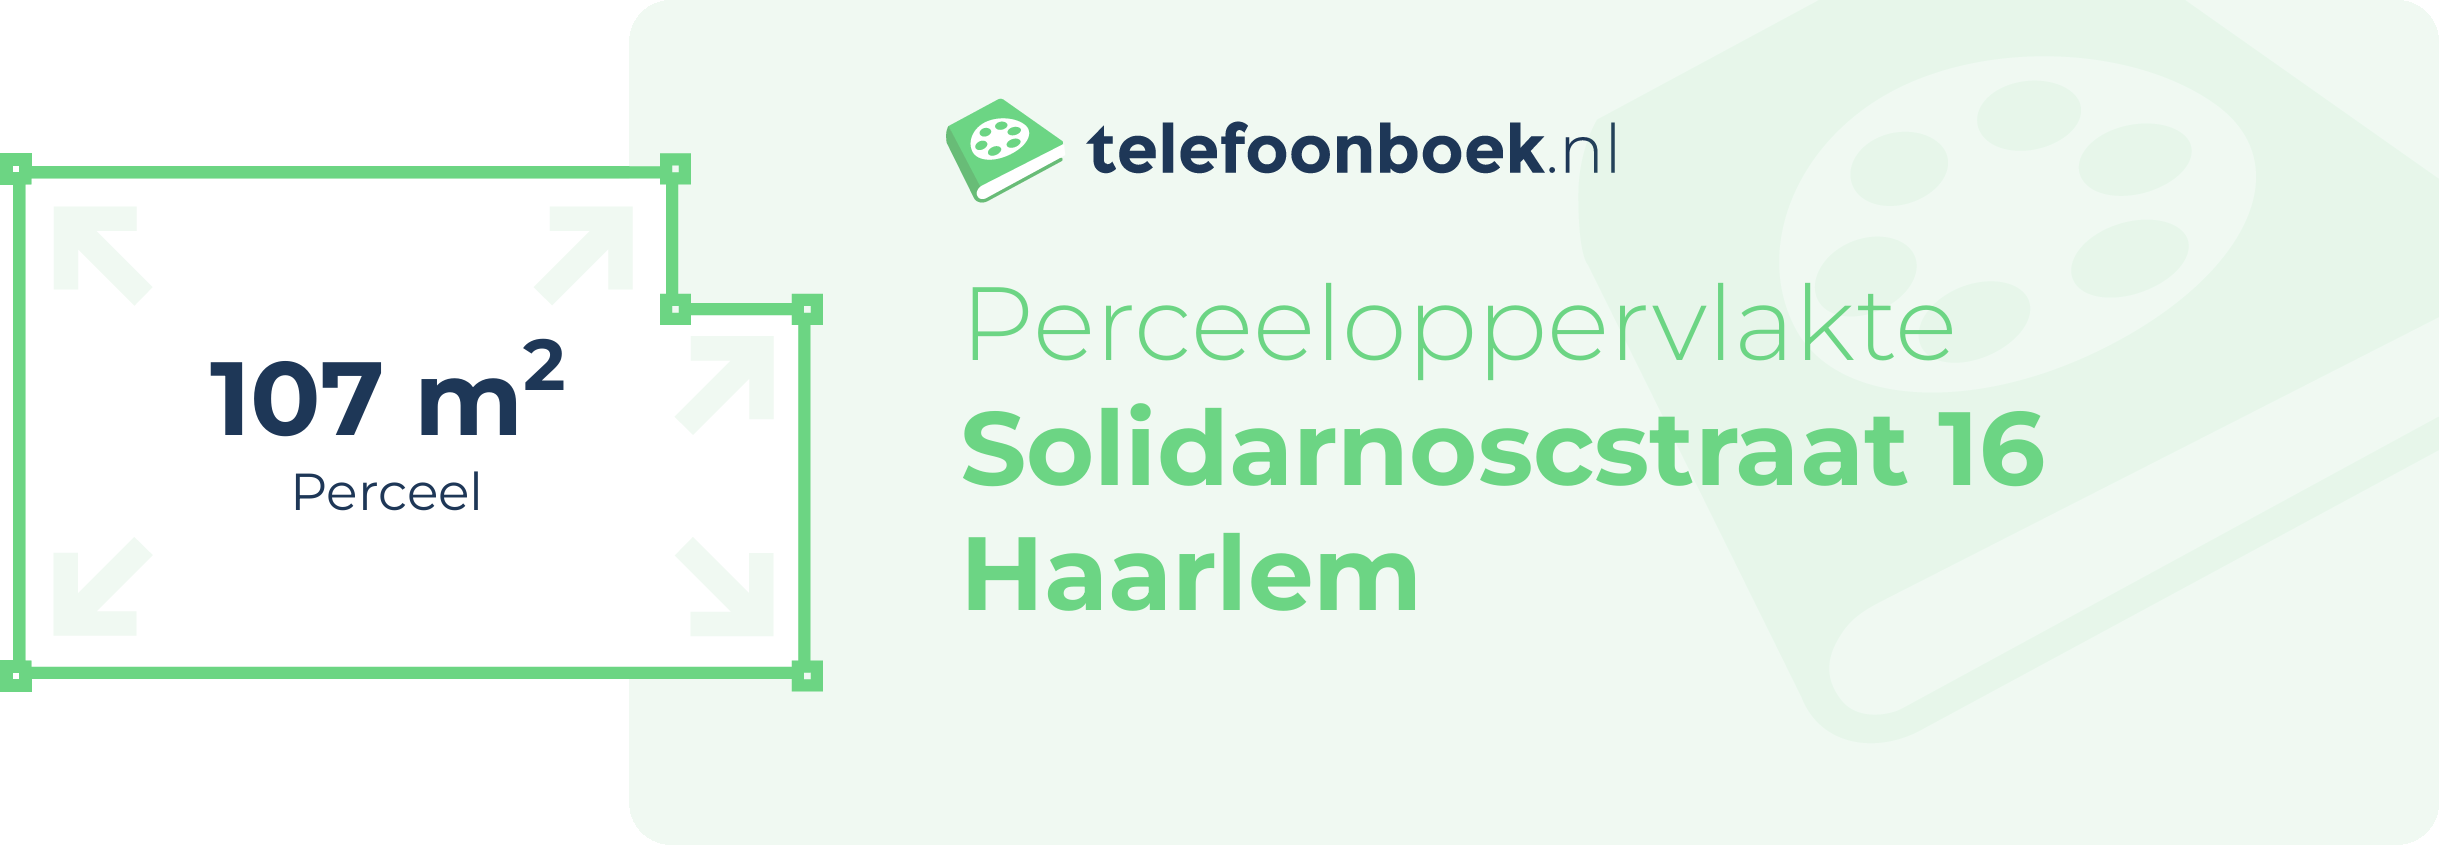 Perceeloppervlakte Solidarnoscstraat 16 Haarlem